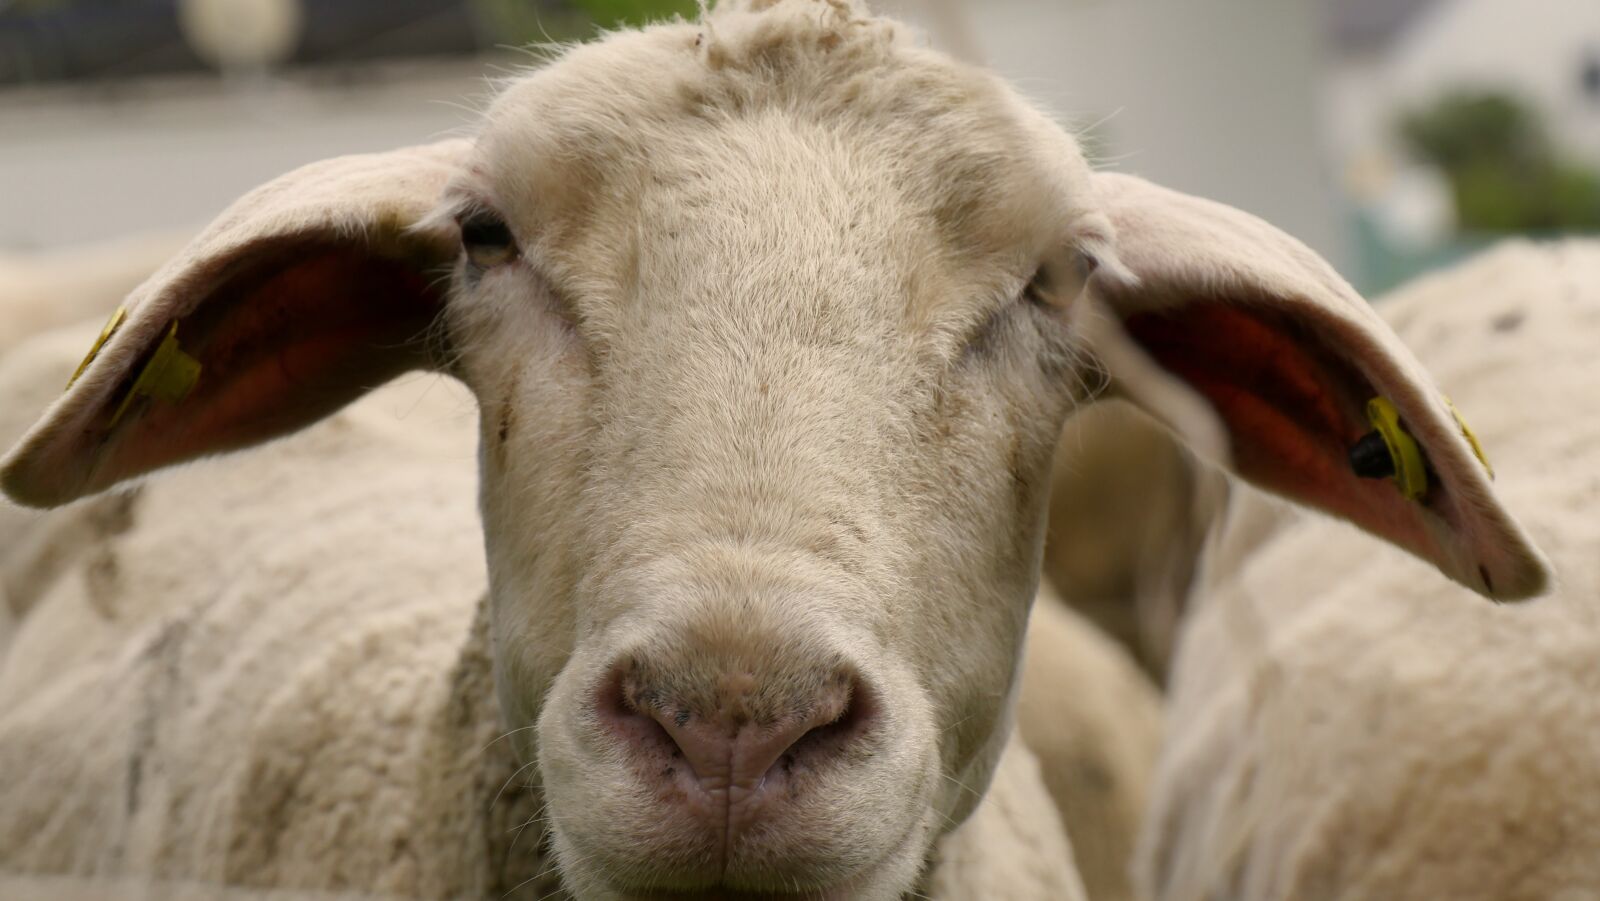 Panasonic Lumix DMC-GX8 sample photo. Sheep, cattle, wool photography